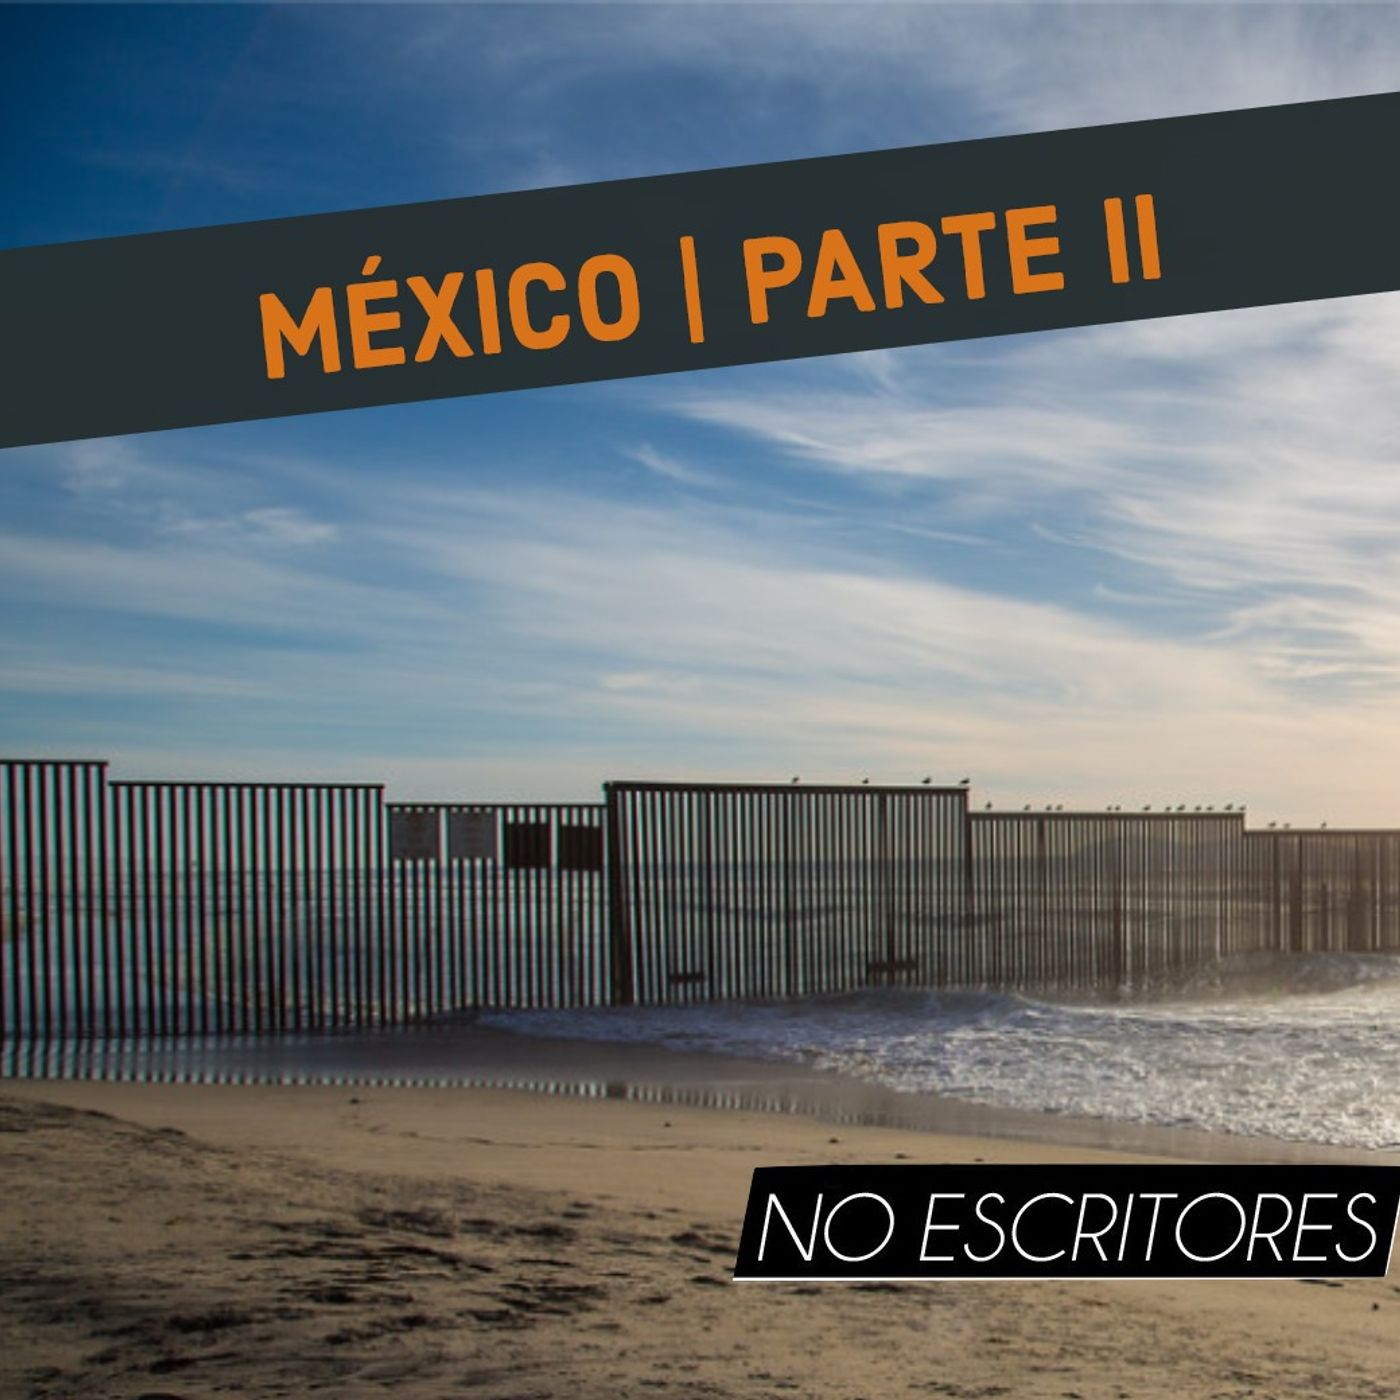 Los No Escritores conversan: Mainstream en EEUU y narrativas de frontera. (México | Parte 2)